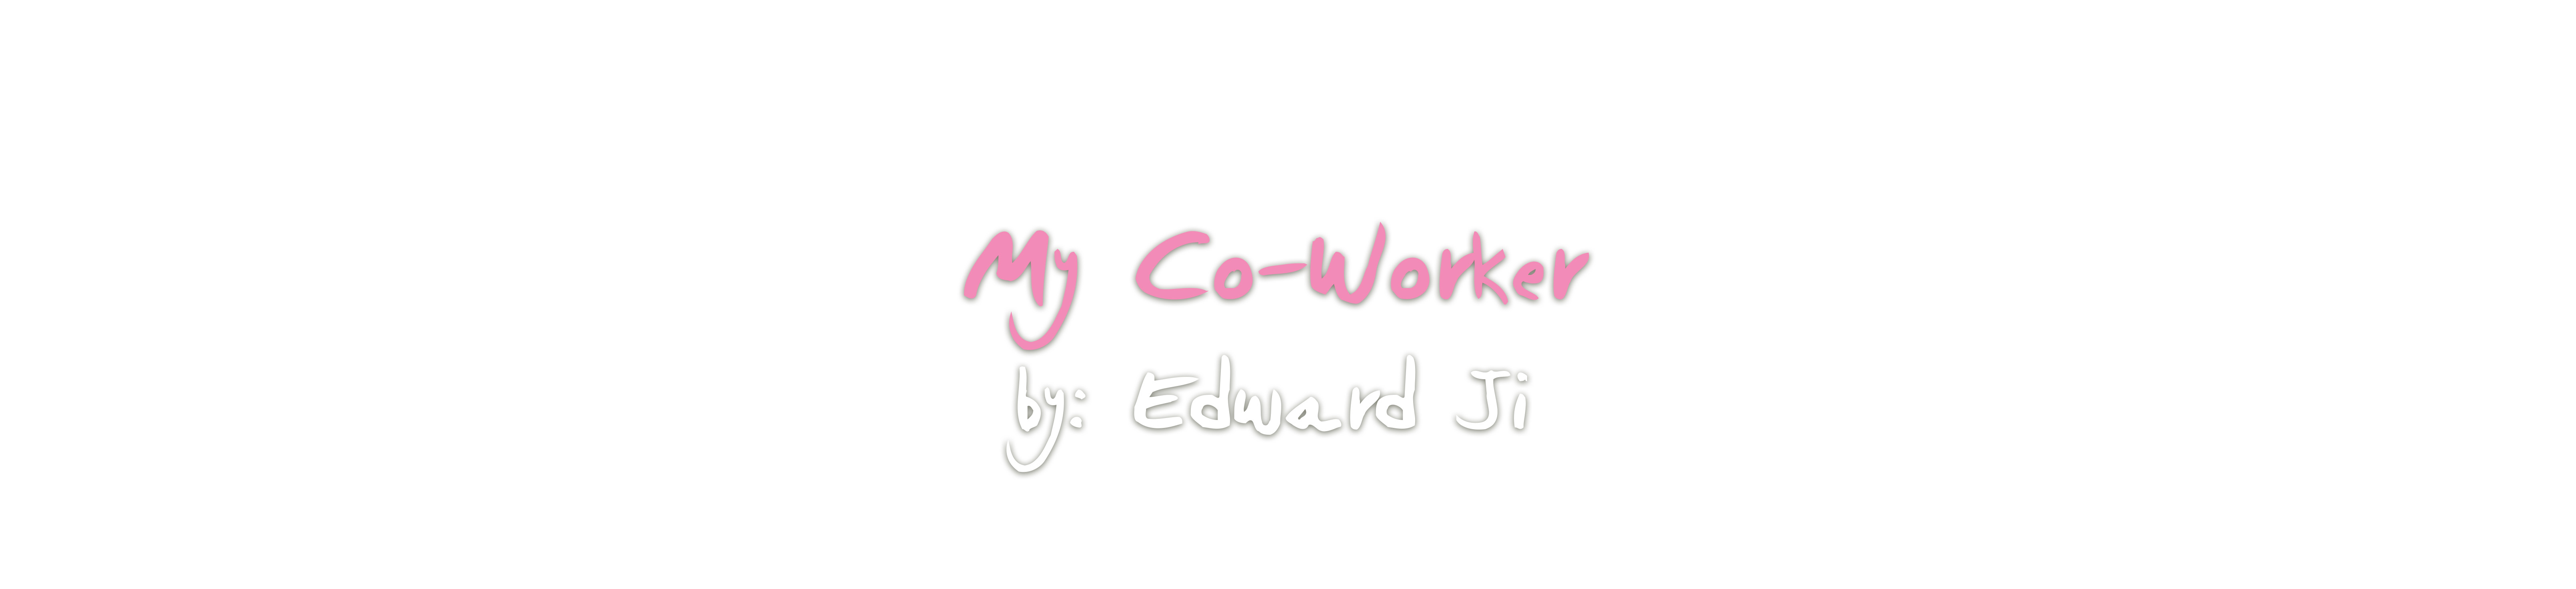 My Co-Worker, by Edward Ji